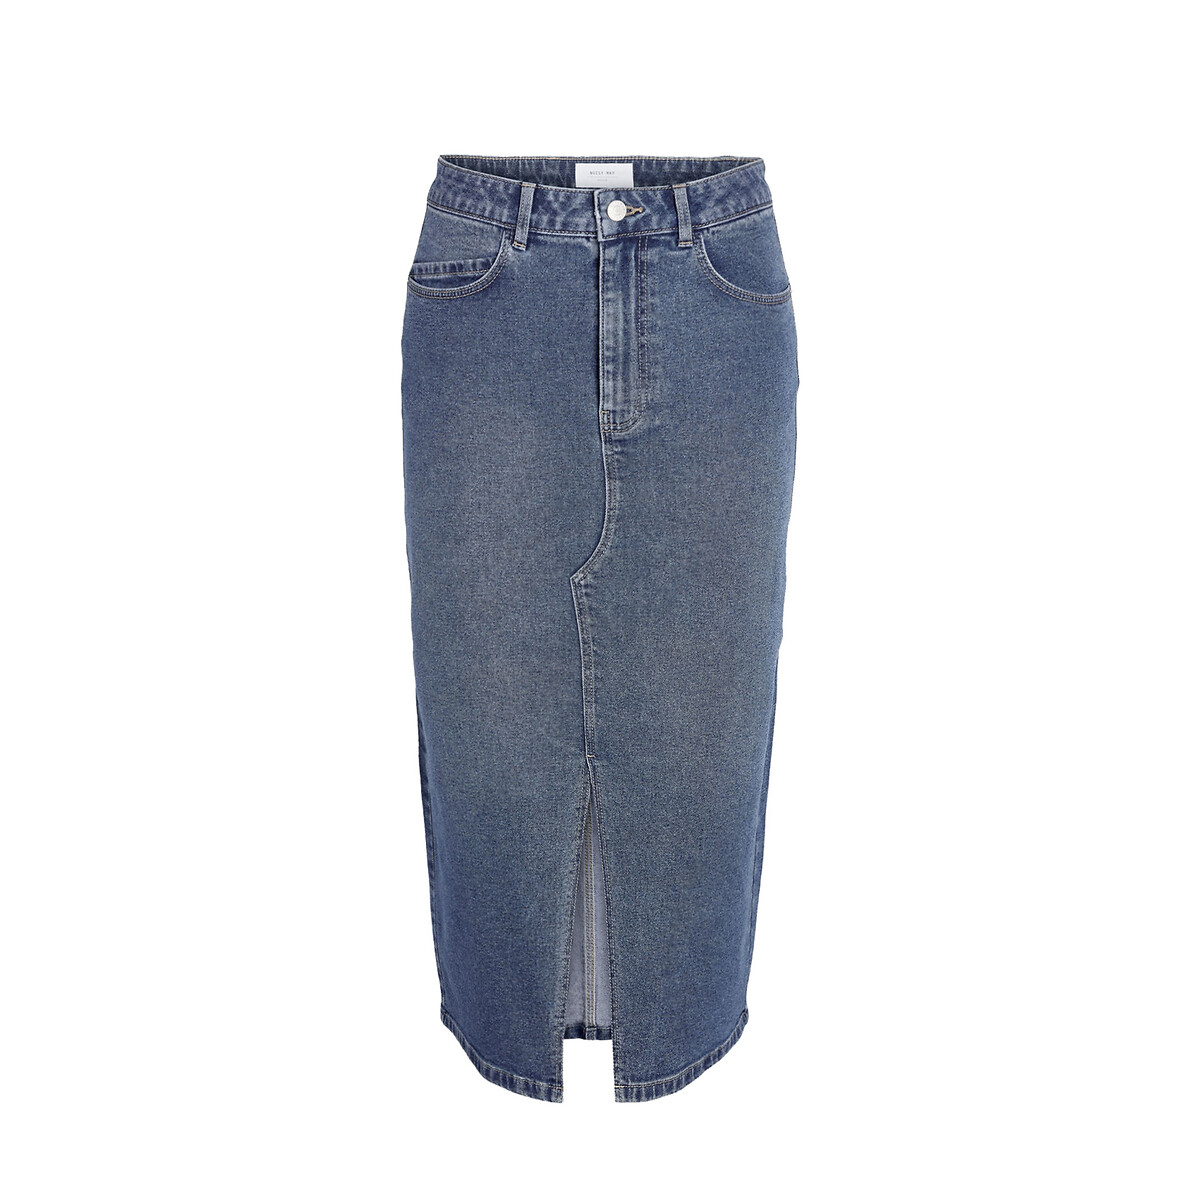 Юбка-миди из джинсовой ткани  S синий LaRedoute, размер S